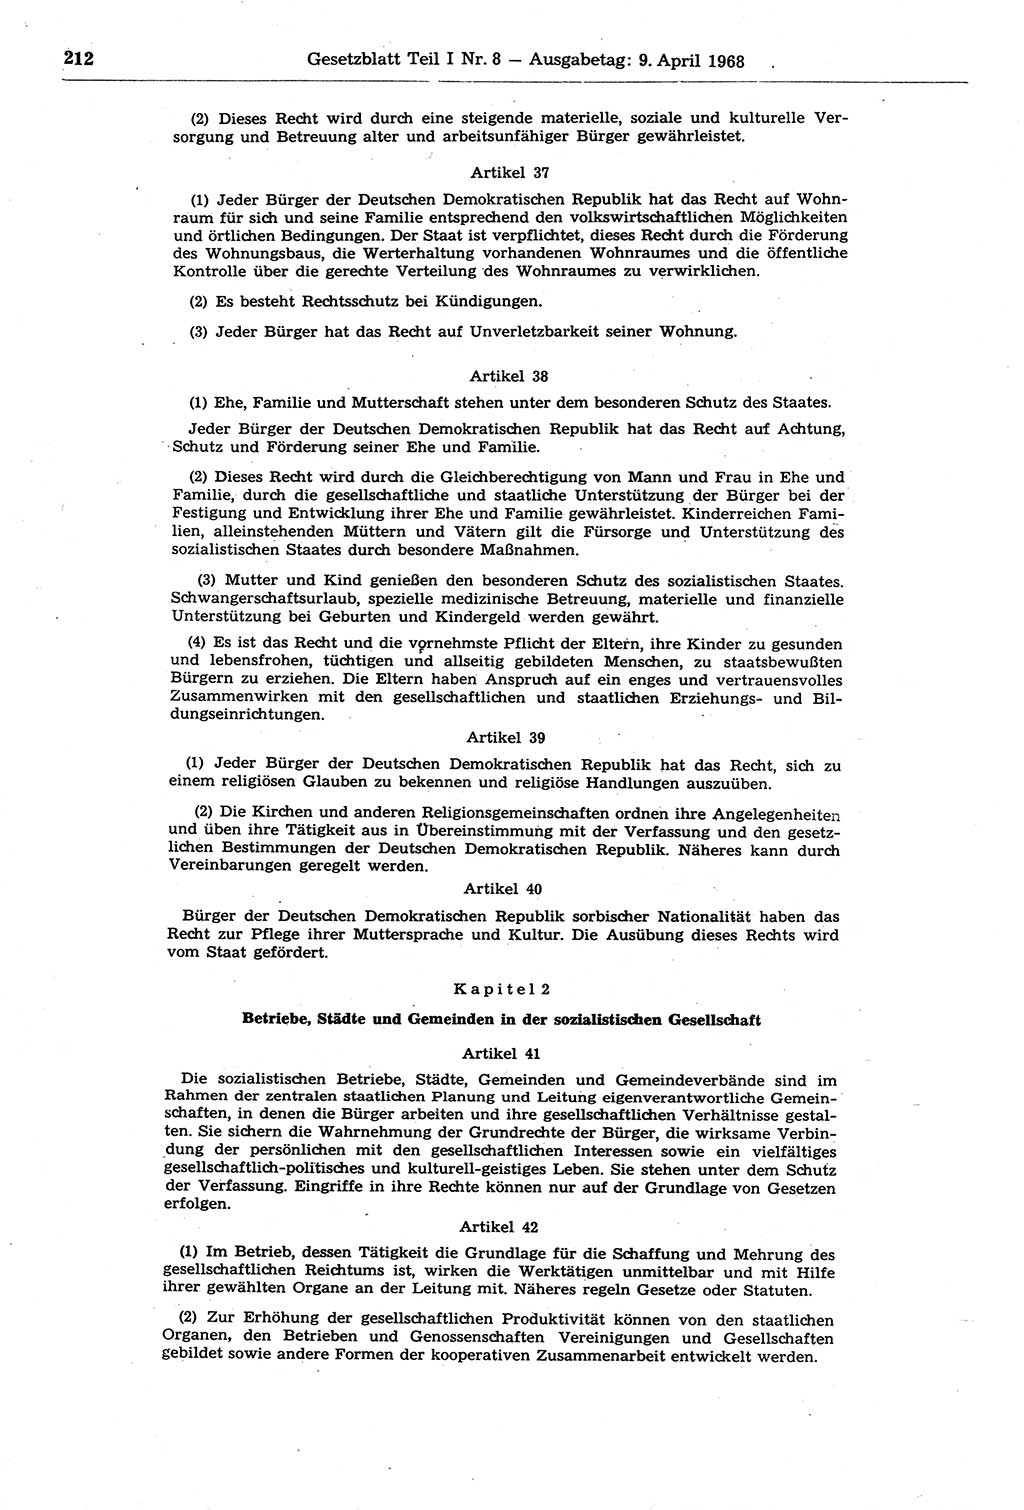 Gesetzblatt (GBl.) der Deutschen Demokratischen Republik (DDR) Teil Ⅰ 1968, Seite 212 (GBl. DDR Ⅰ 1968, S. 212)